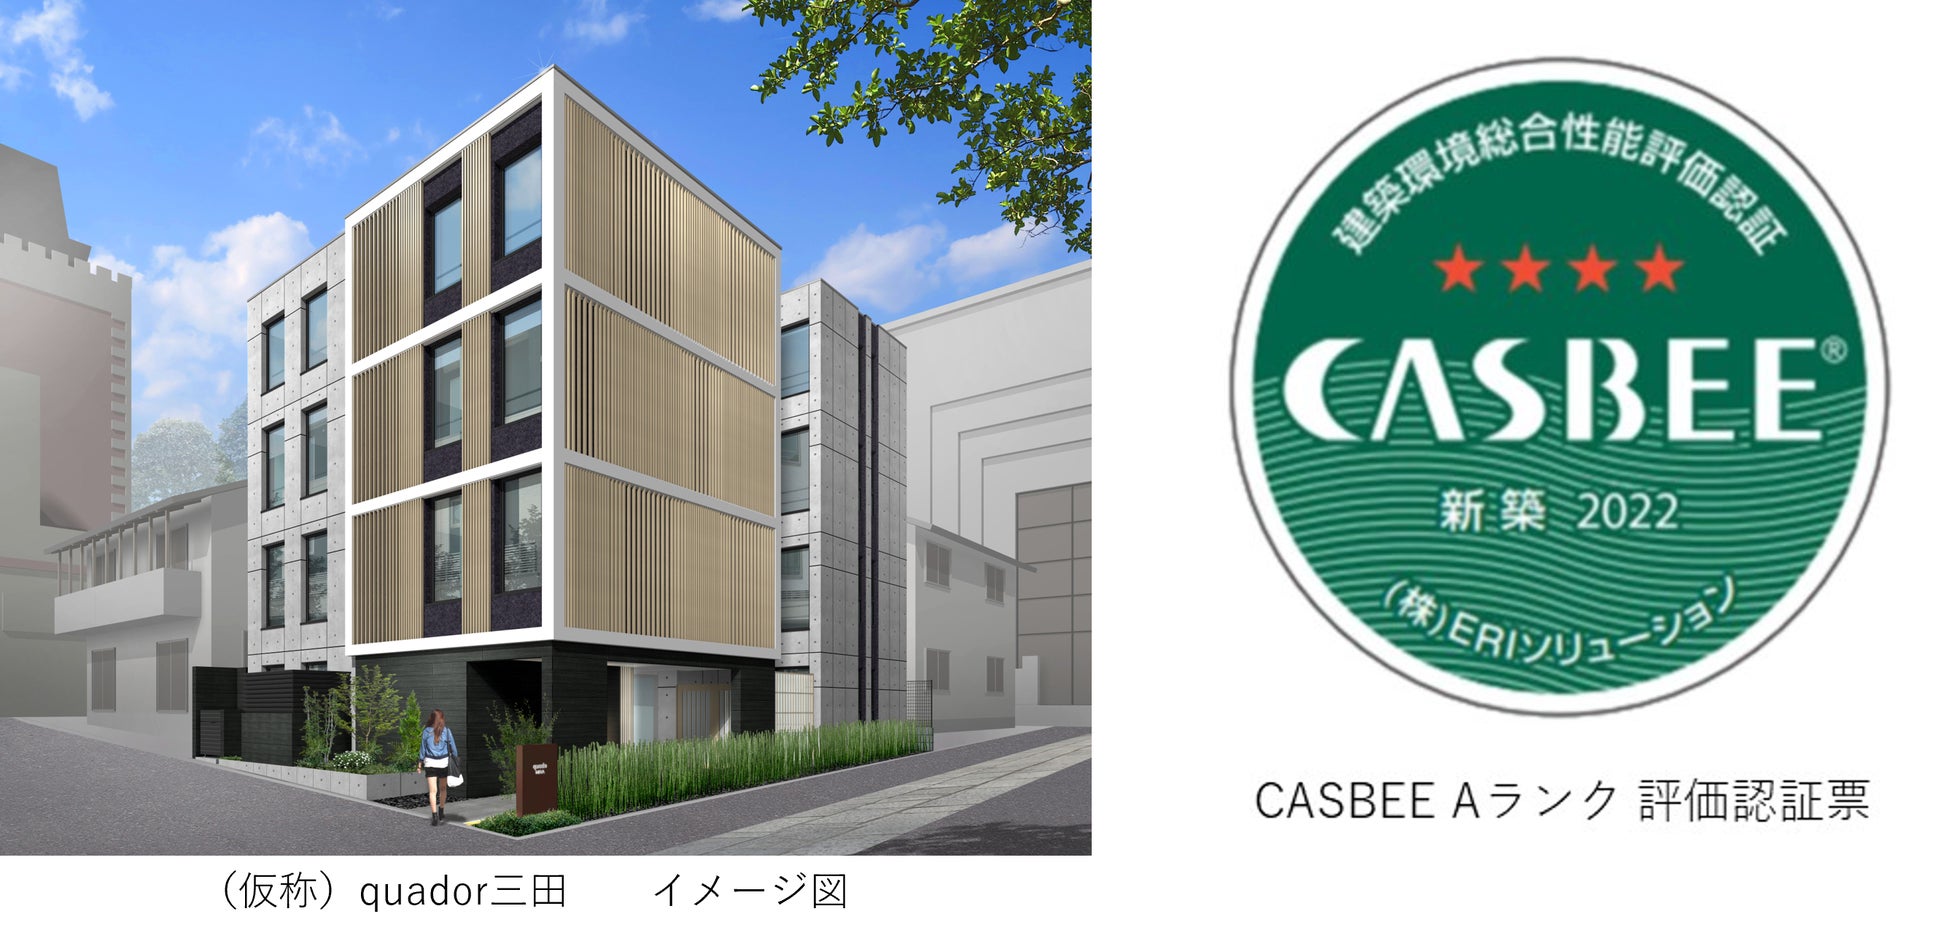 東京の新築RCマンションも環境性能が高く評価され、quadorシリーズ6棟目の「CASBEE Aランク」を取得！のサブ画像1